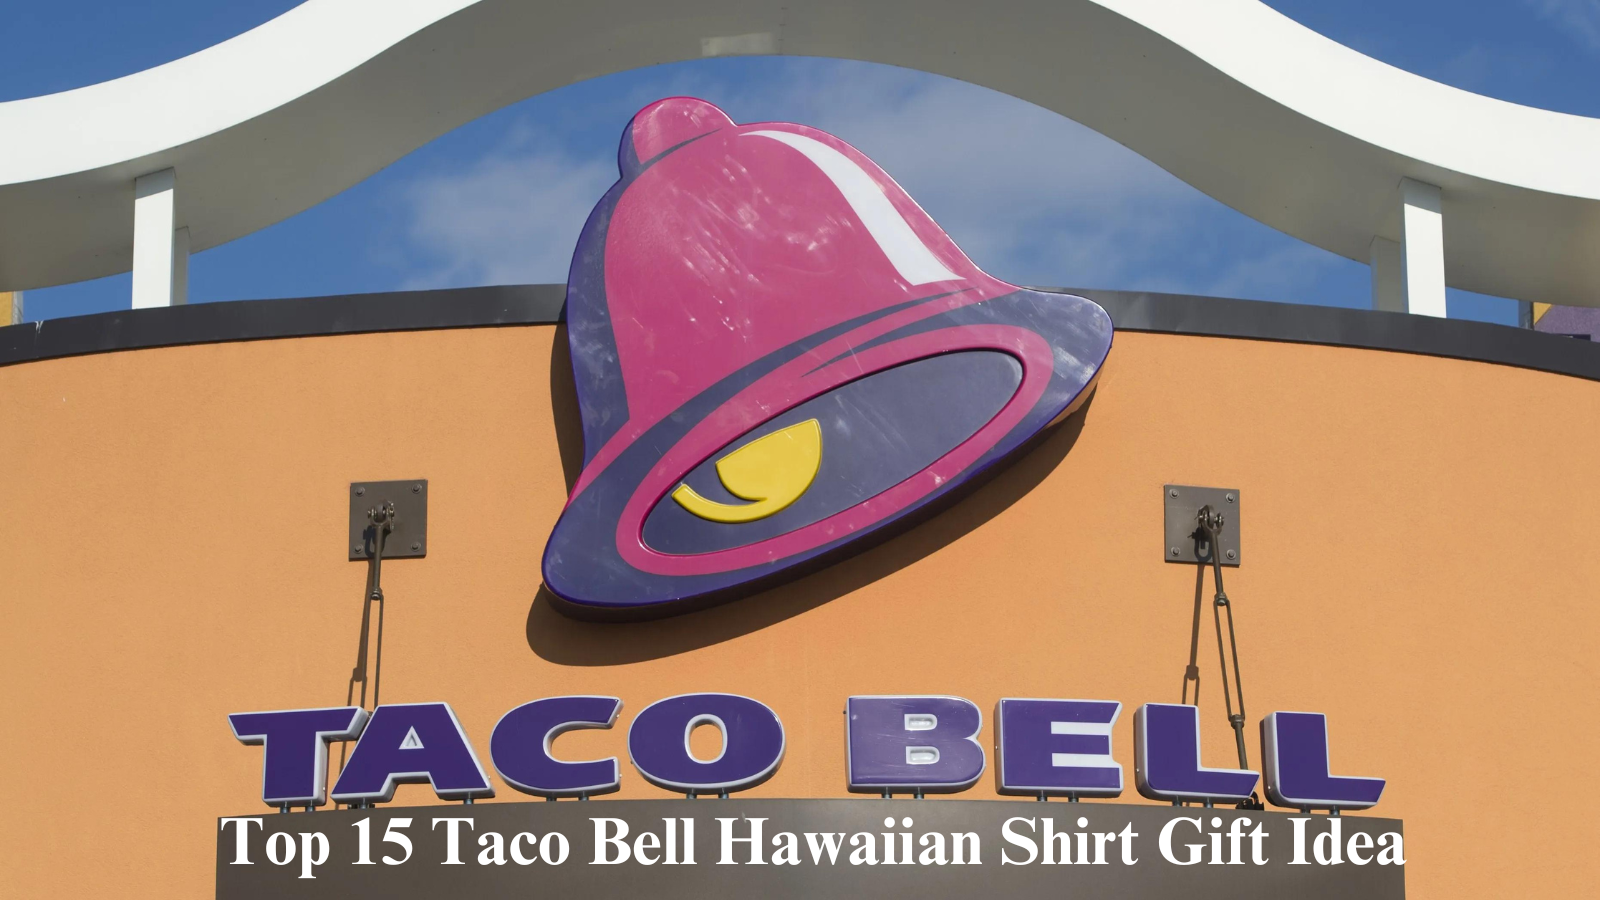 Top 15 Taco Bell Hawaiian Shirt Gift Idea